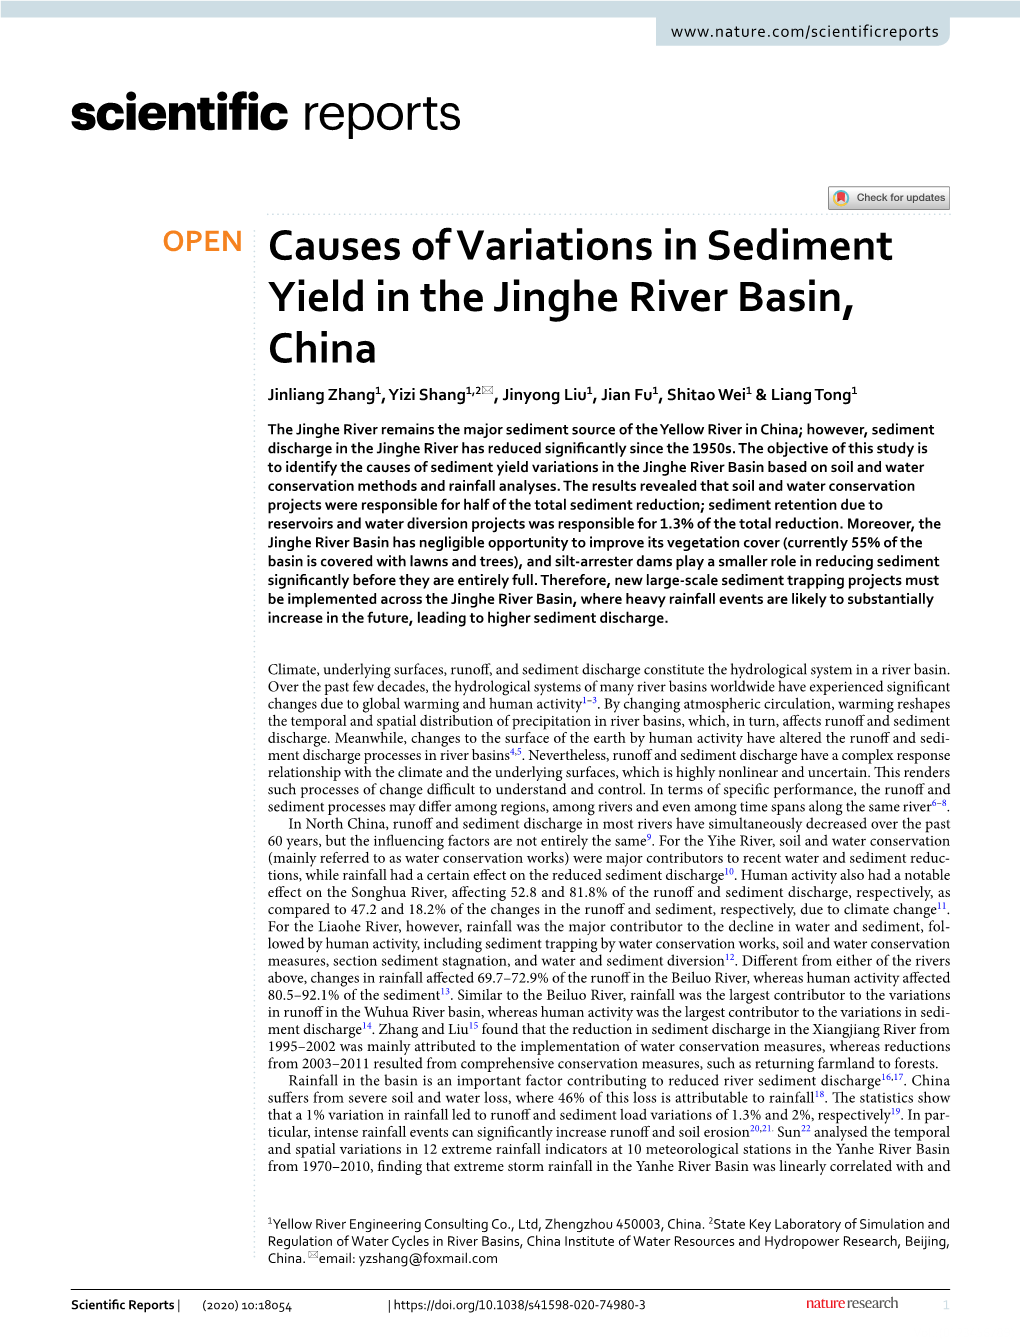 Causes of Variations in Sediment Yield in the Jinghe River Basin, China Jinliang Zhang1, Yizi Shang1,2*, Jinyong Liu1, Jian Fu1, Shitao Wei1 & Liang Tong1